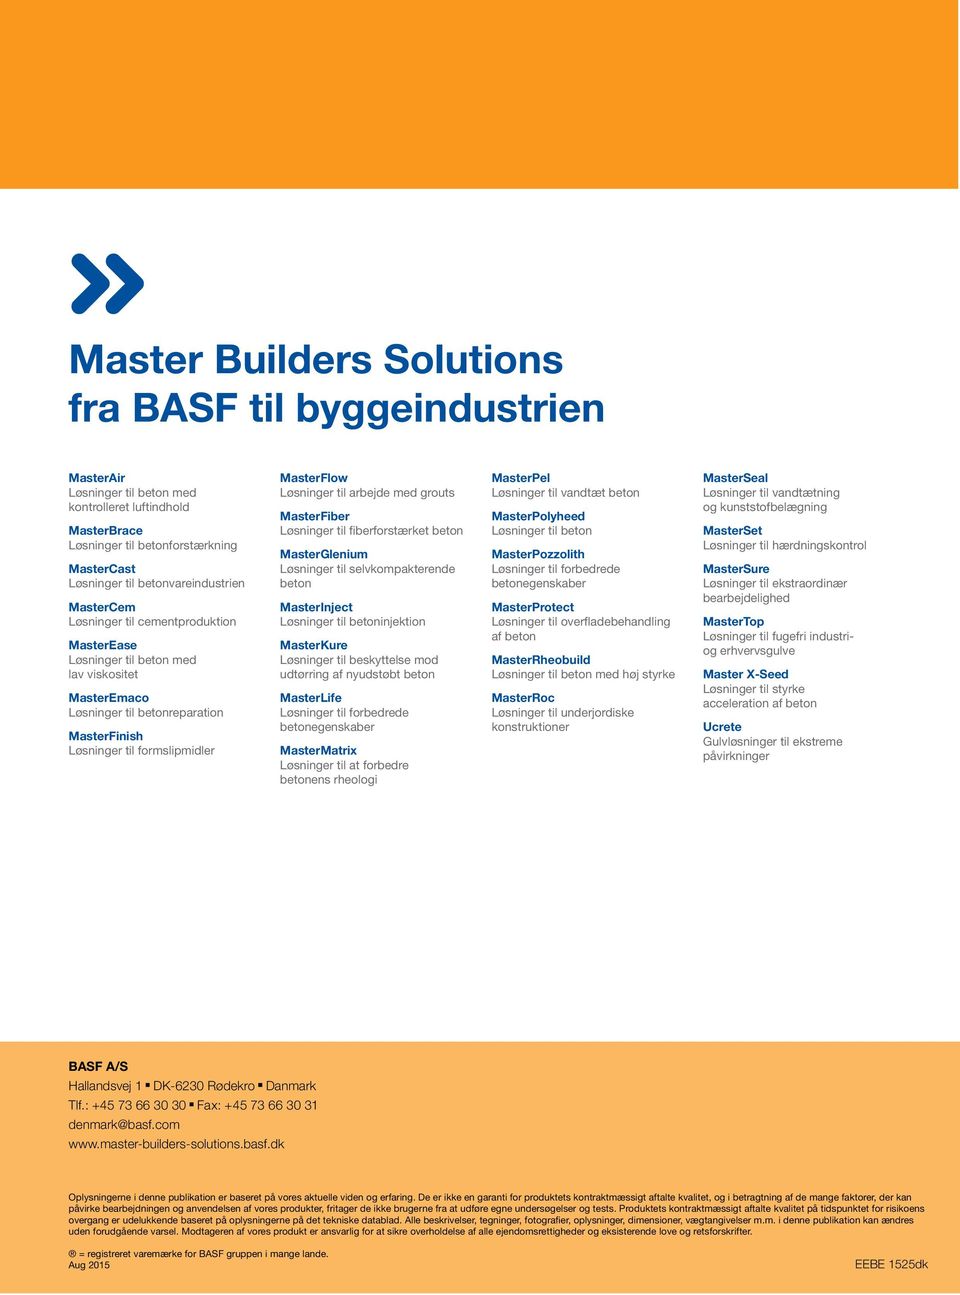 Løsninger til formslipmidler MasterFlow Løsninger til arbejde med grouts MasterFiber Løsninger til fiberforstærket beton MasterGlenium Løsninger til selvkompakterende beton MasterInject Løsninger til